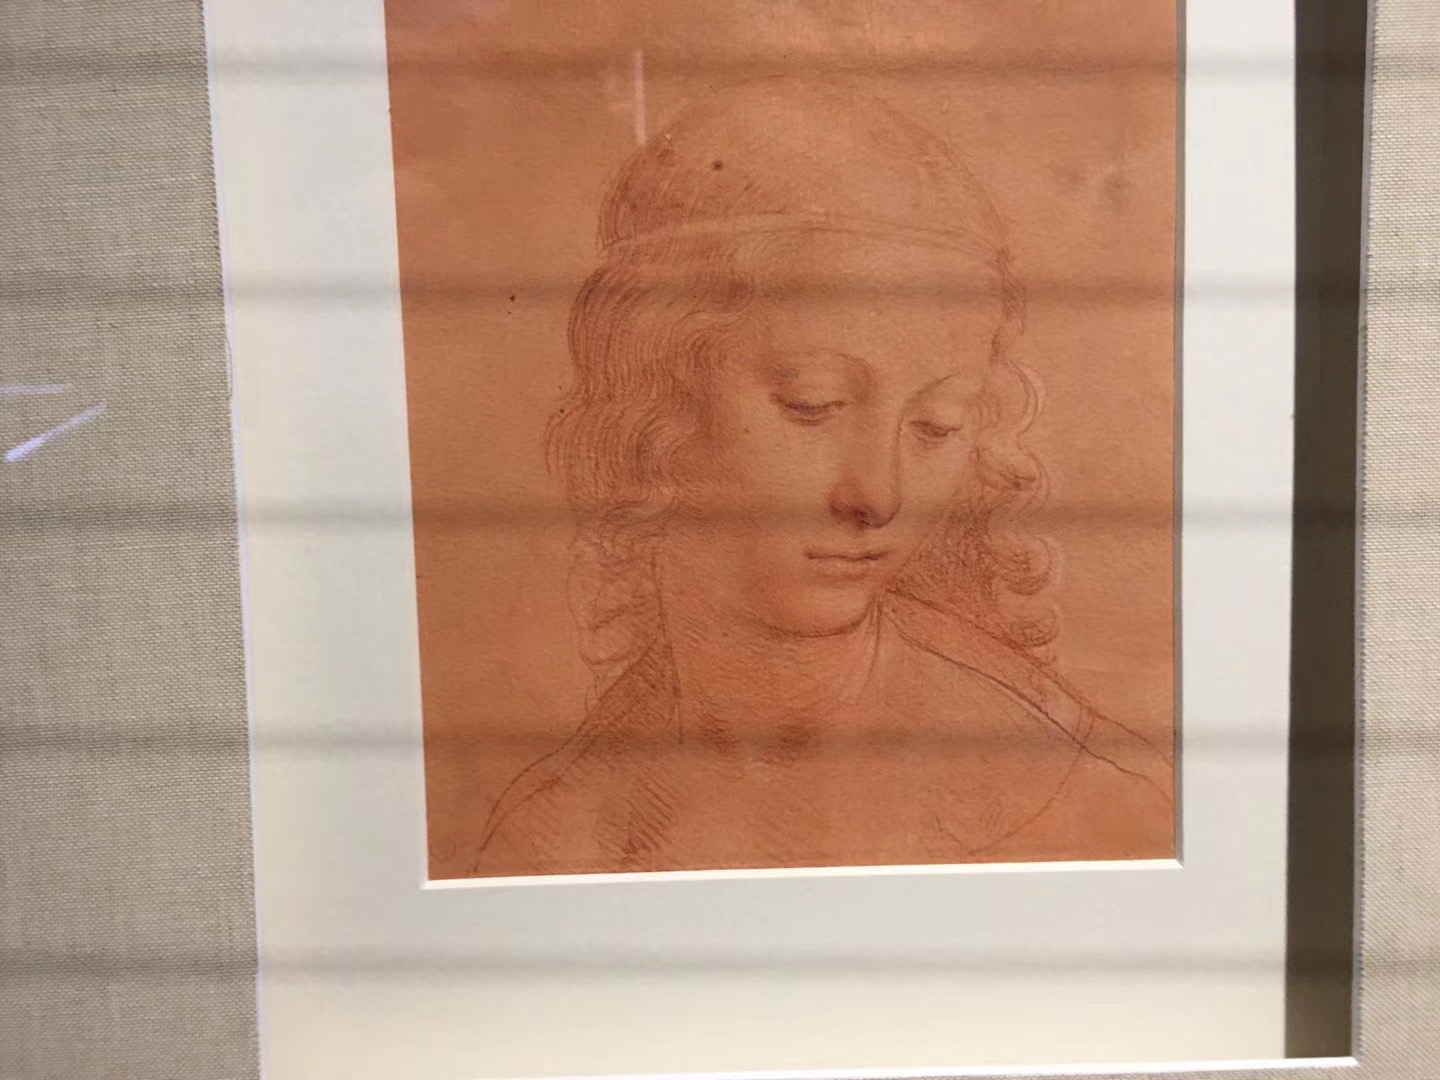 达芬奇的“女孩头部像”，自己比较喜欢的一幅作品，还专程买了相似的纪念品